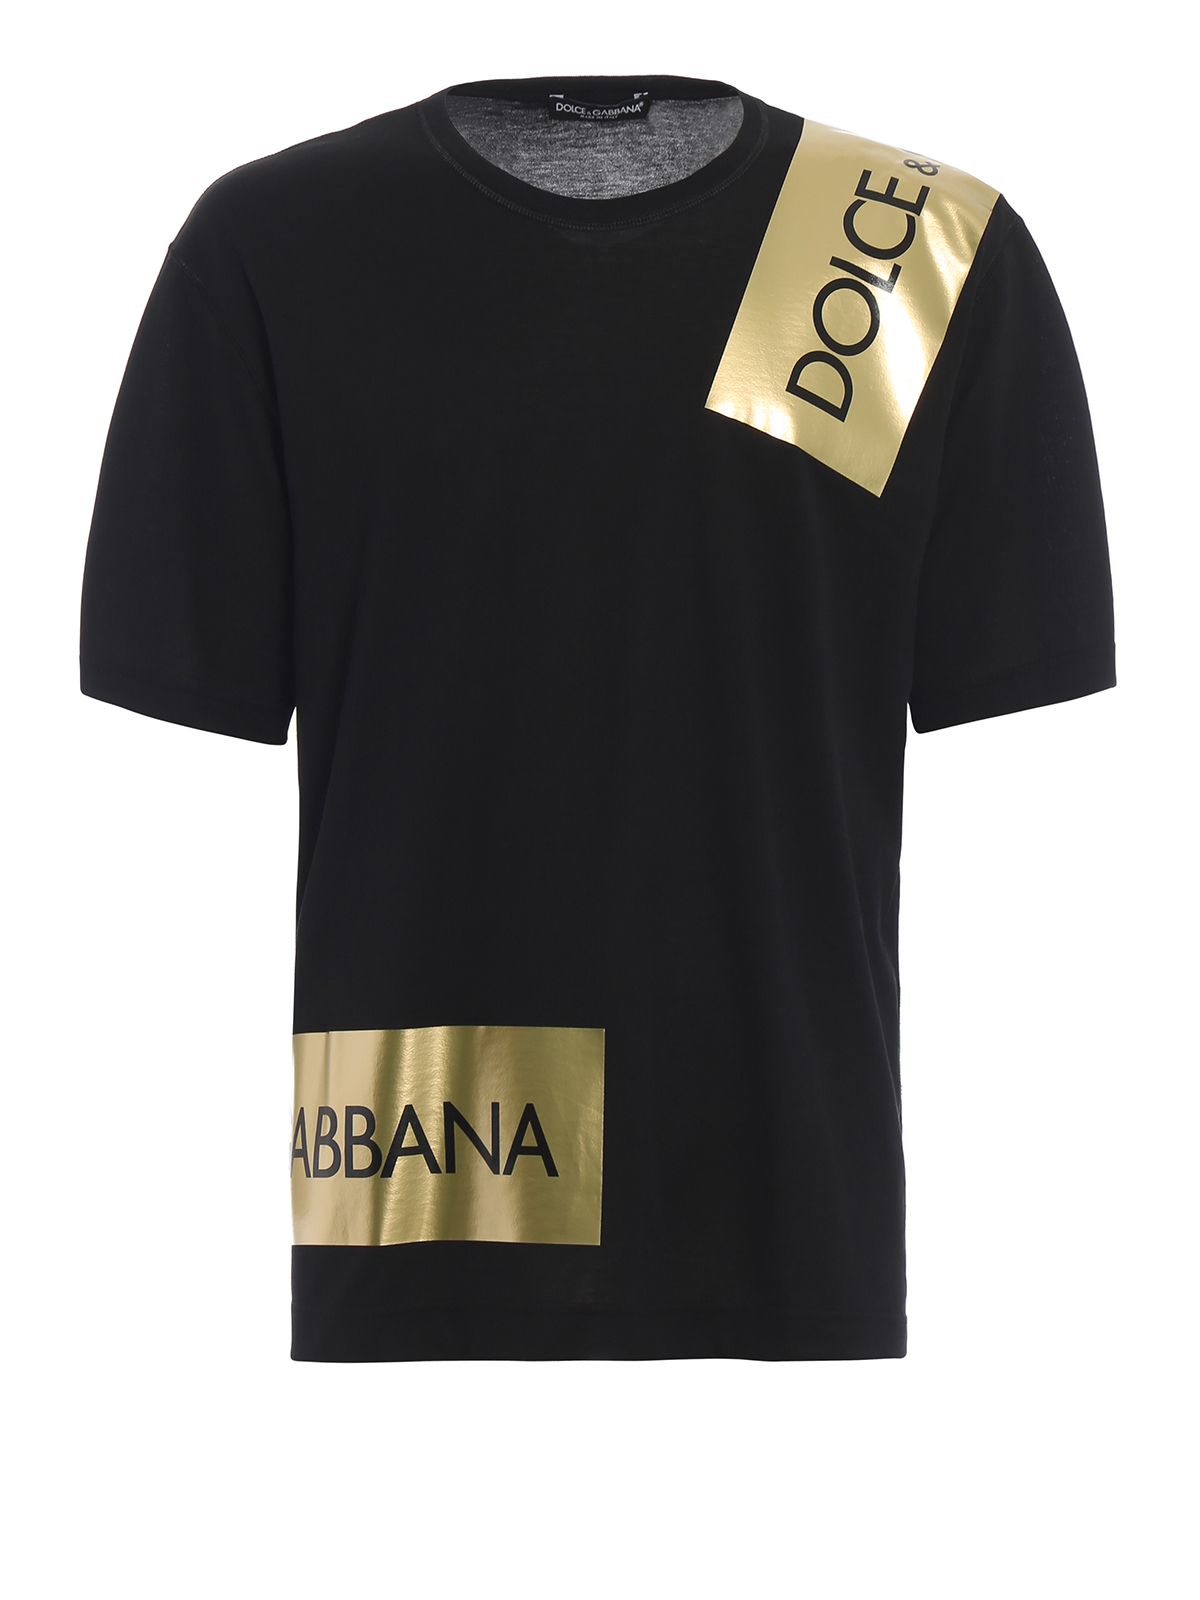 dolce and gabbana logo shirt